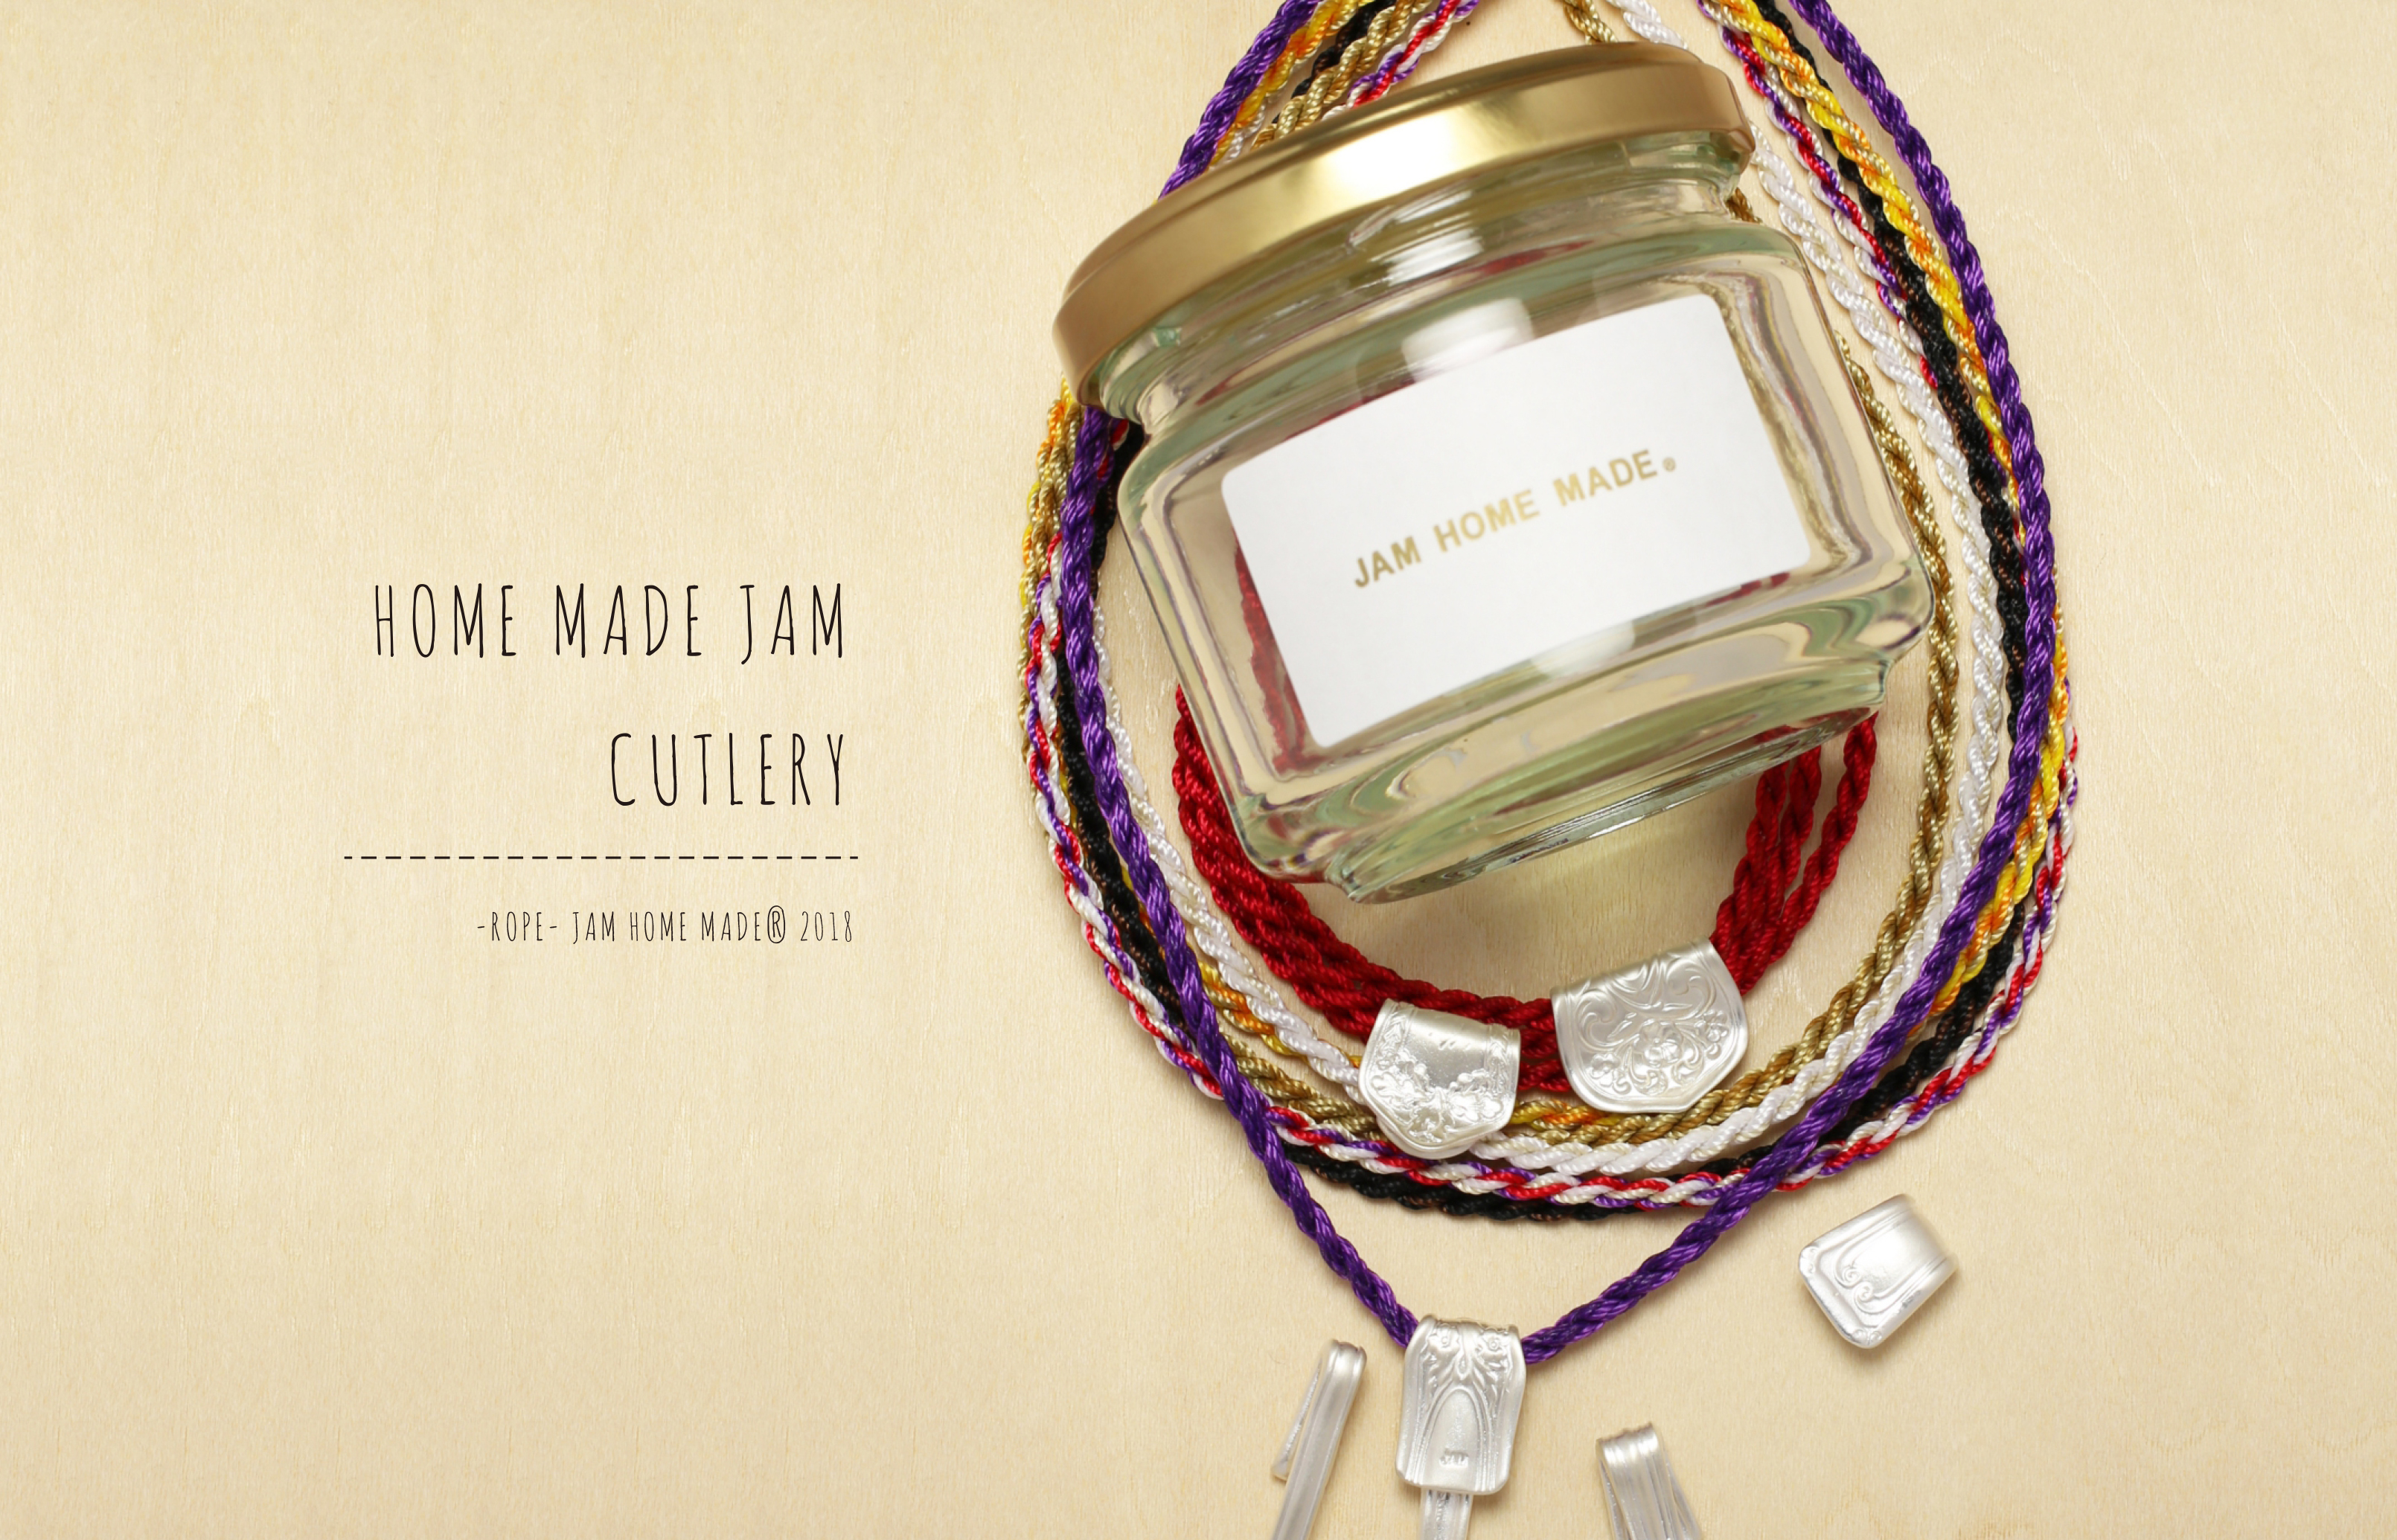 ブランド創立20周年記念 JAM HOME MADEの原点である『ROPE』コレクションを一新 『HOME MADE JAM CUTLERY